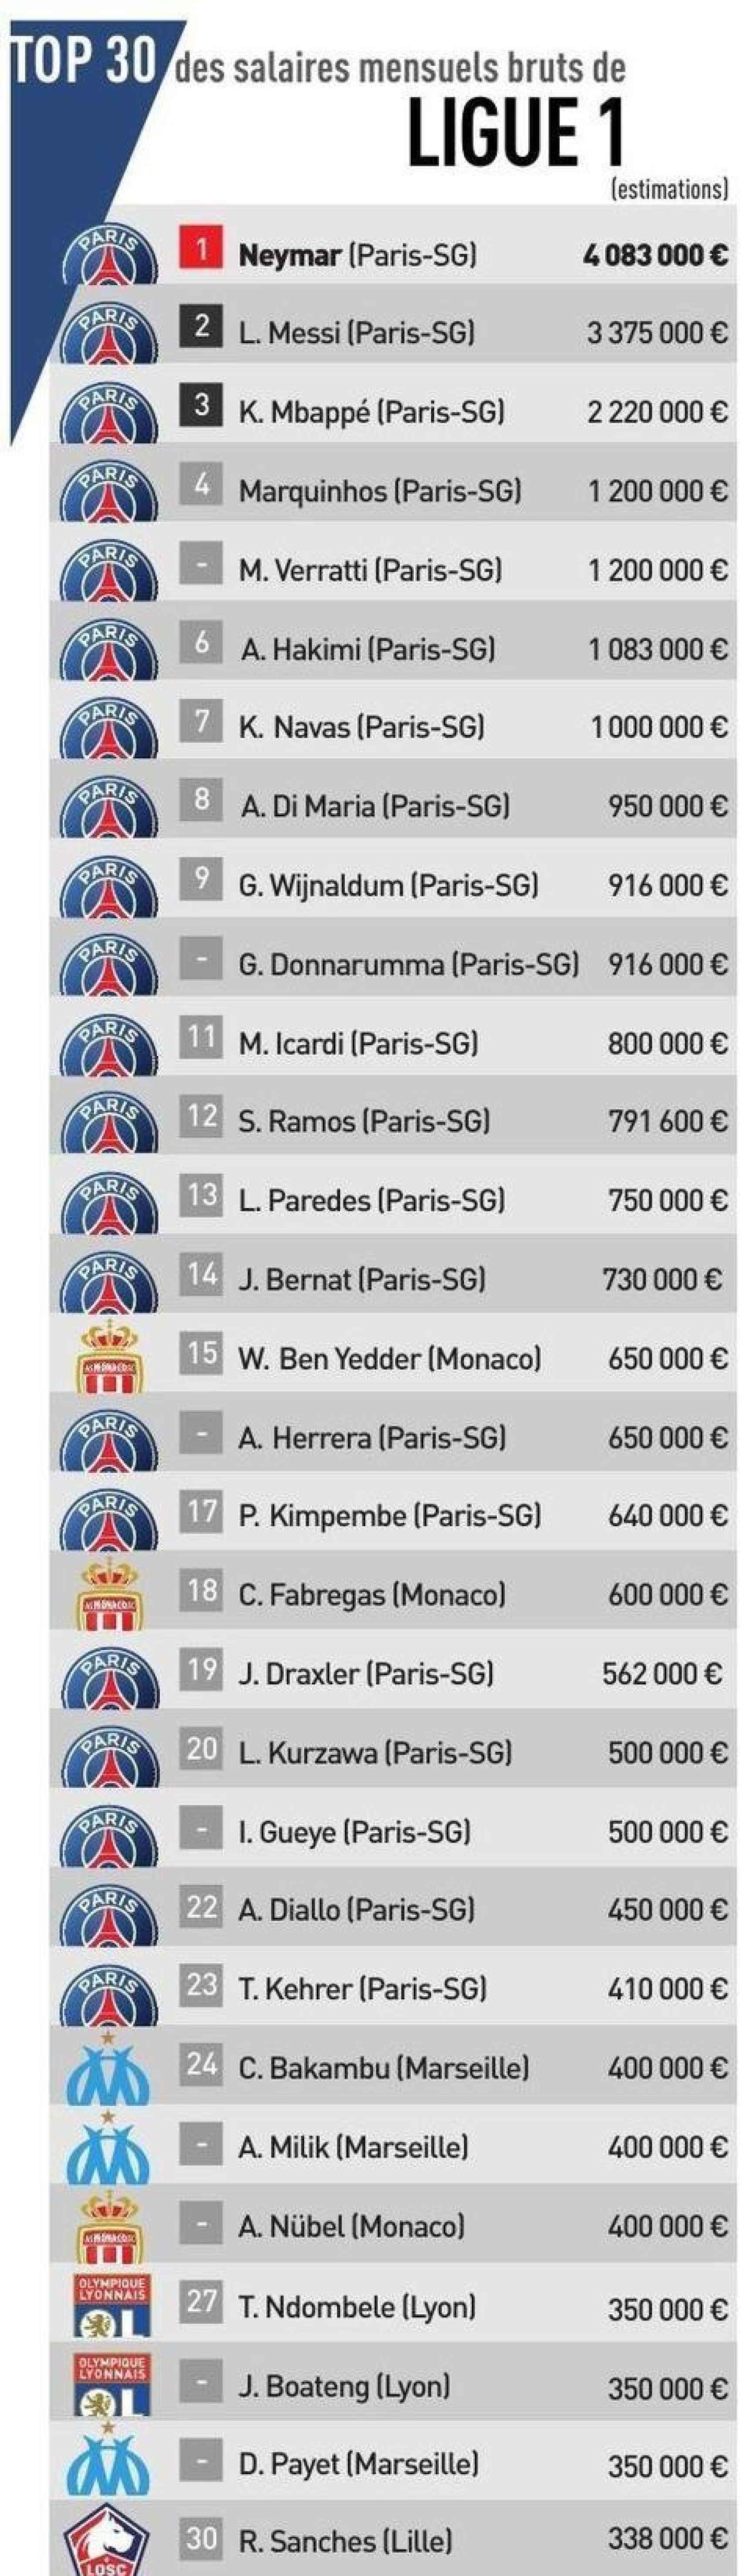 Los 30 mejores sueldos de la Ligue-1